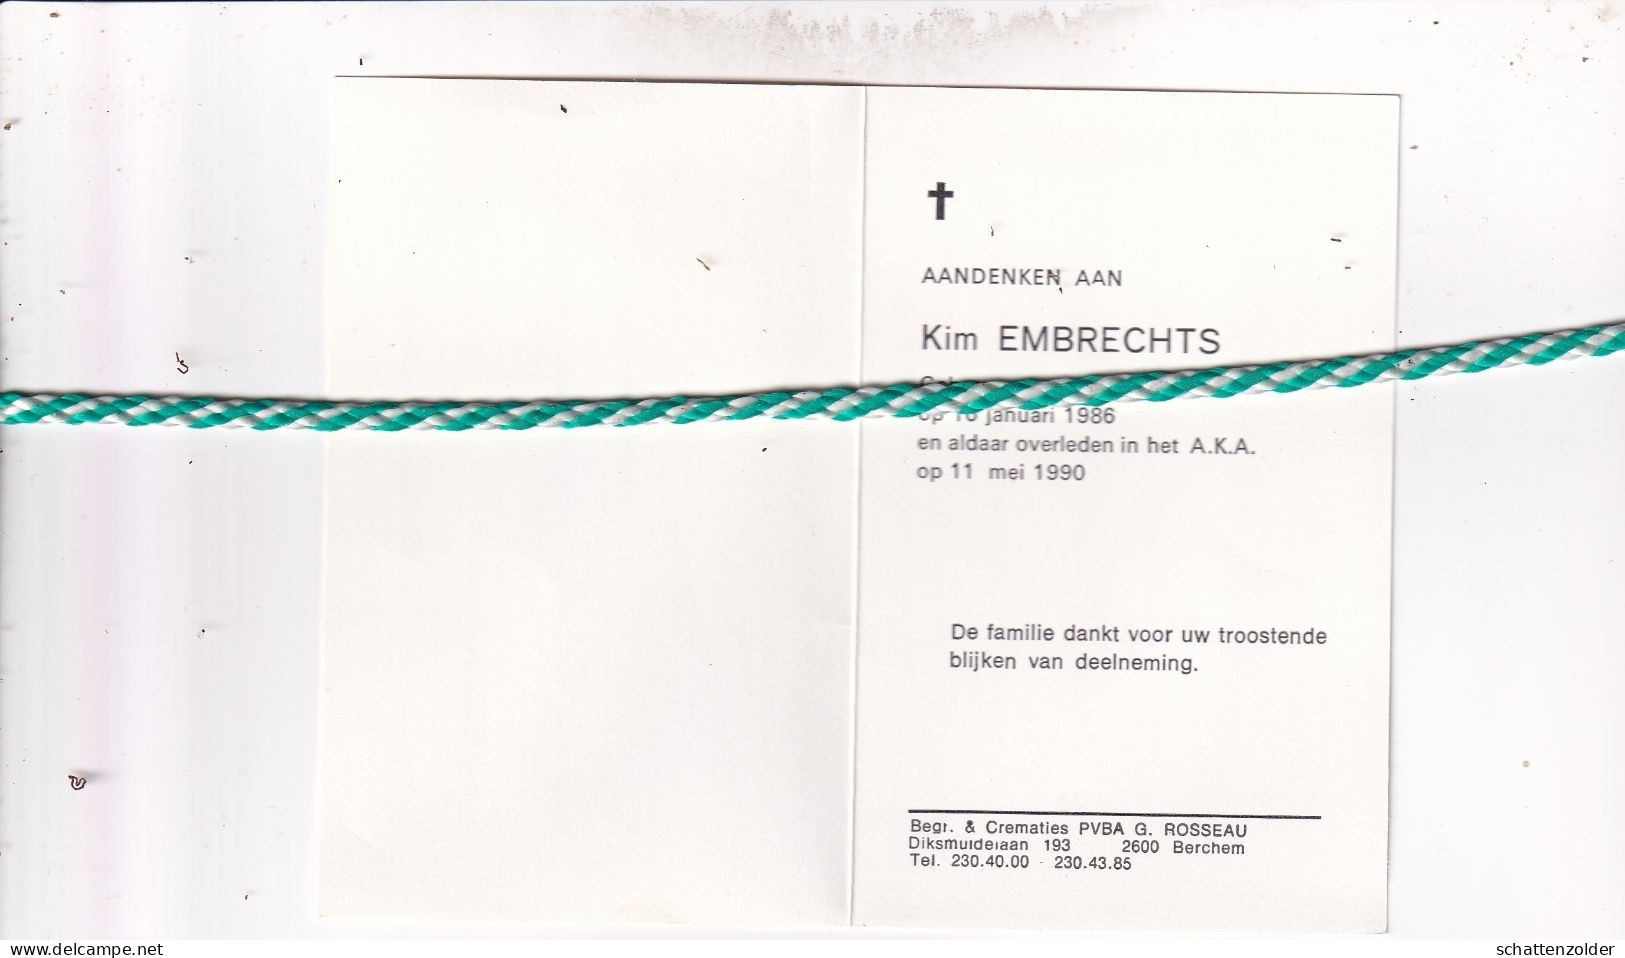 Kim Embrechts, Antwerpen 1986, 1990 - Overlijden